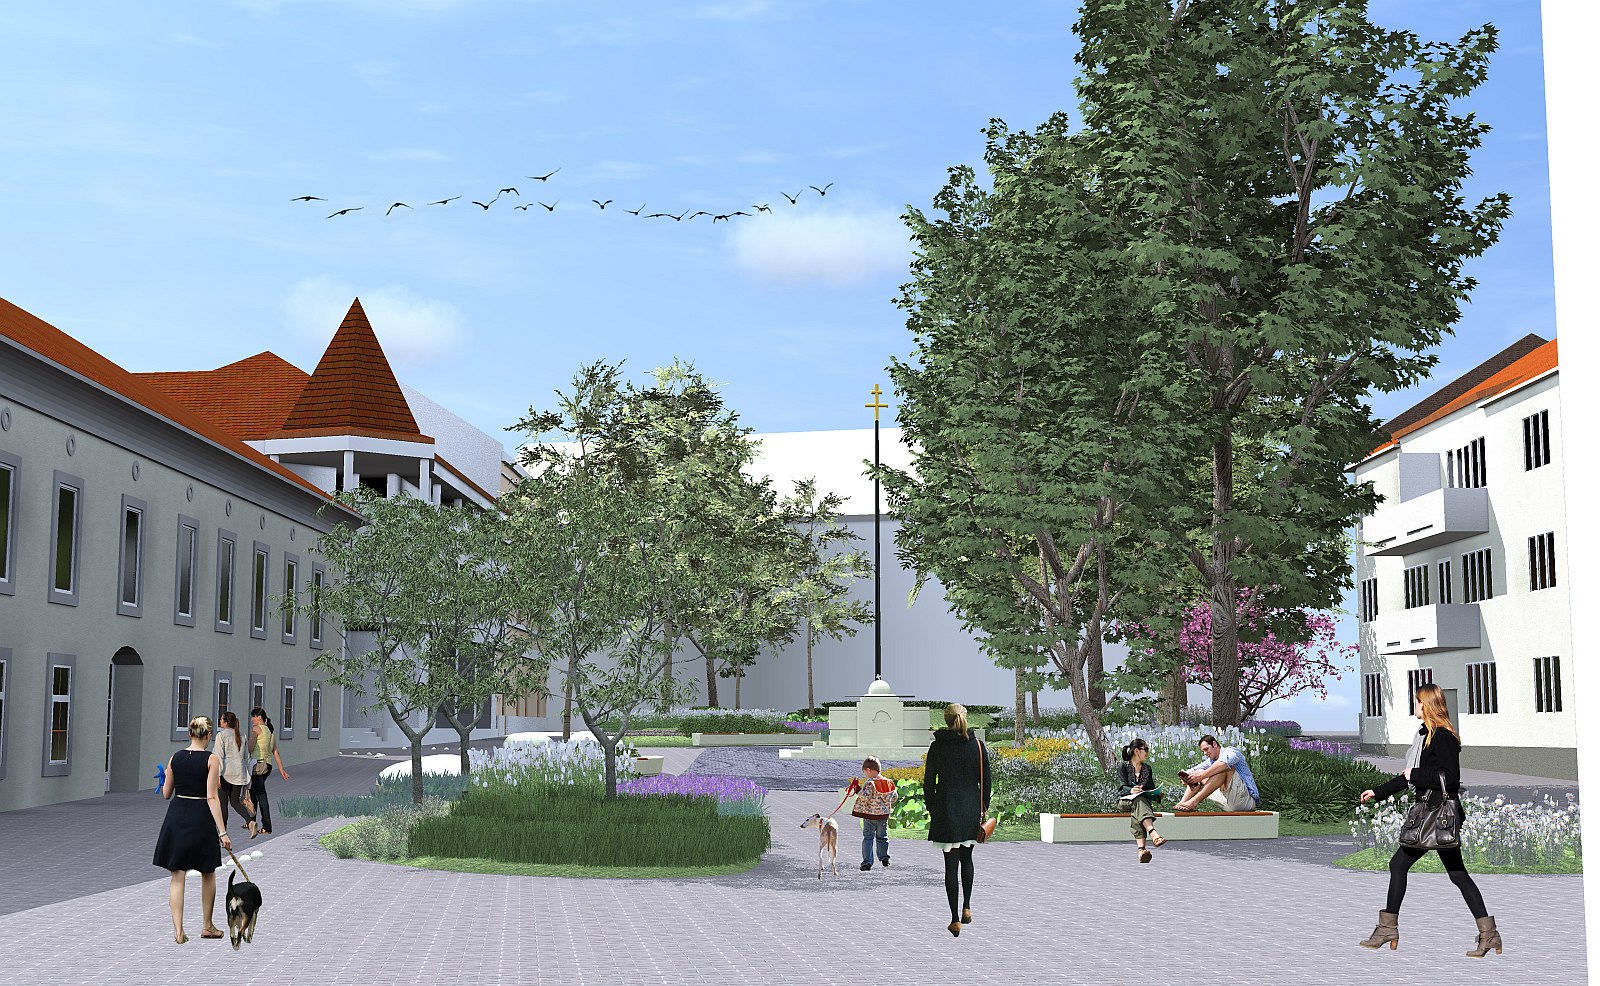 Kezdődik az Országzászló tér felújítása - igazi közösségi tér lesz